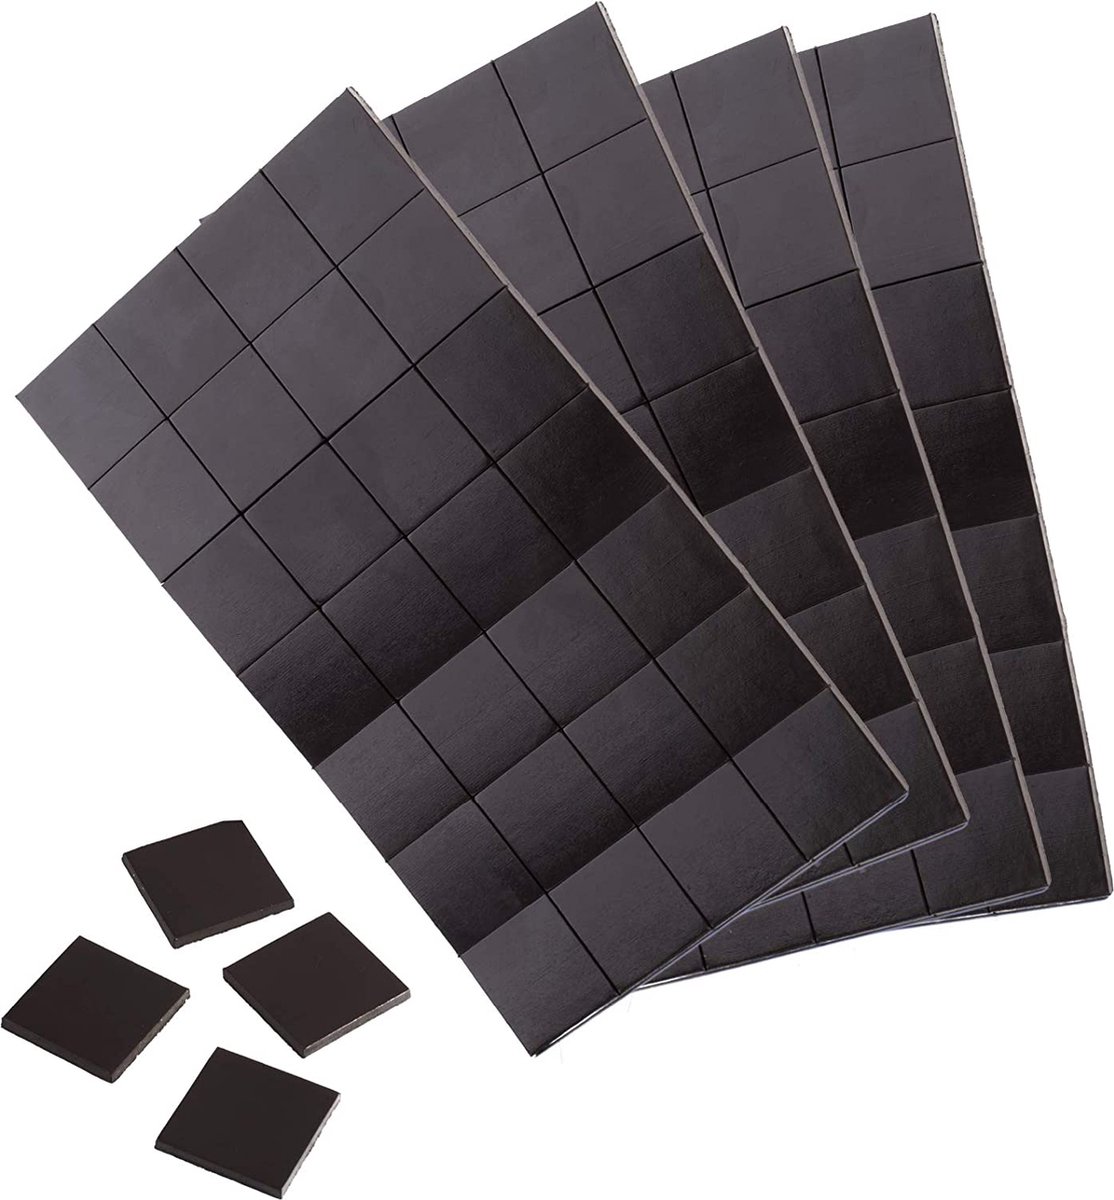 WINTEX Magneetplaatjes, zelfklevend, sterk – 112 magneten 20 x 20 mm, op maat te snijden – vlakke kleefmagneten geschikt voor foto's/afbeeldingen plakken of aan het bord plakken 112 20x20mm